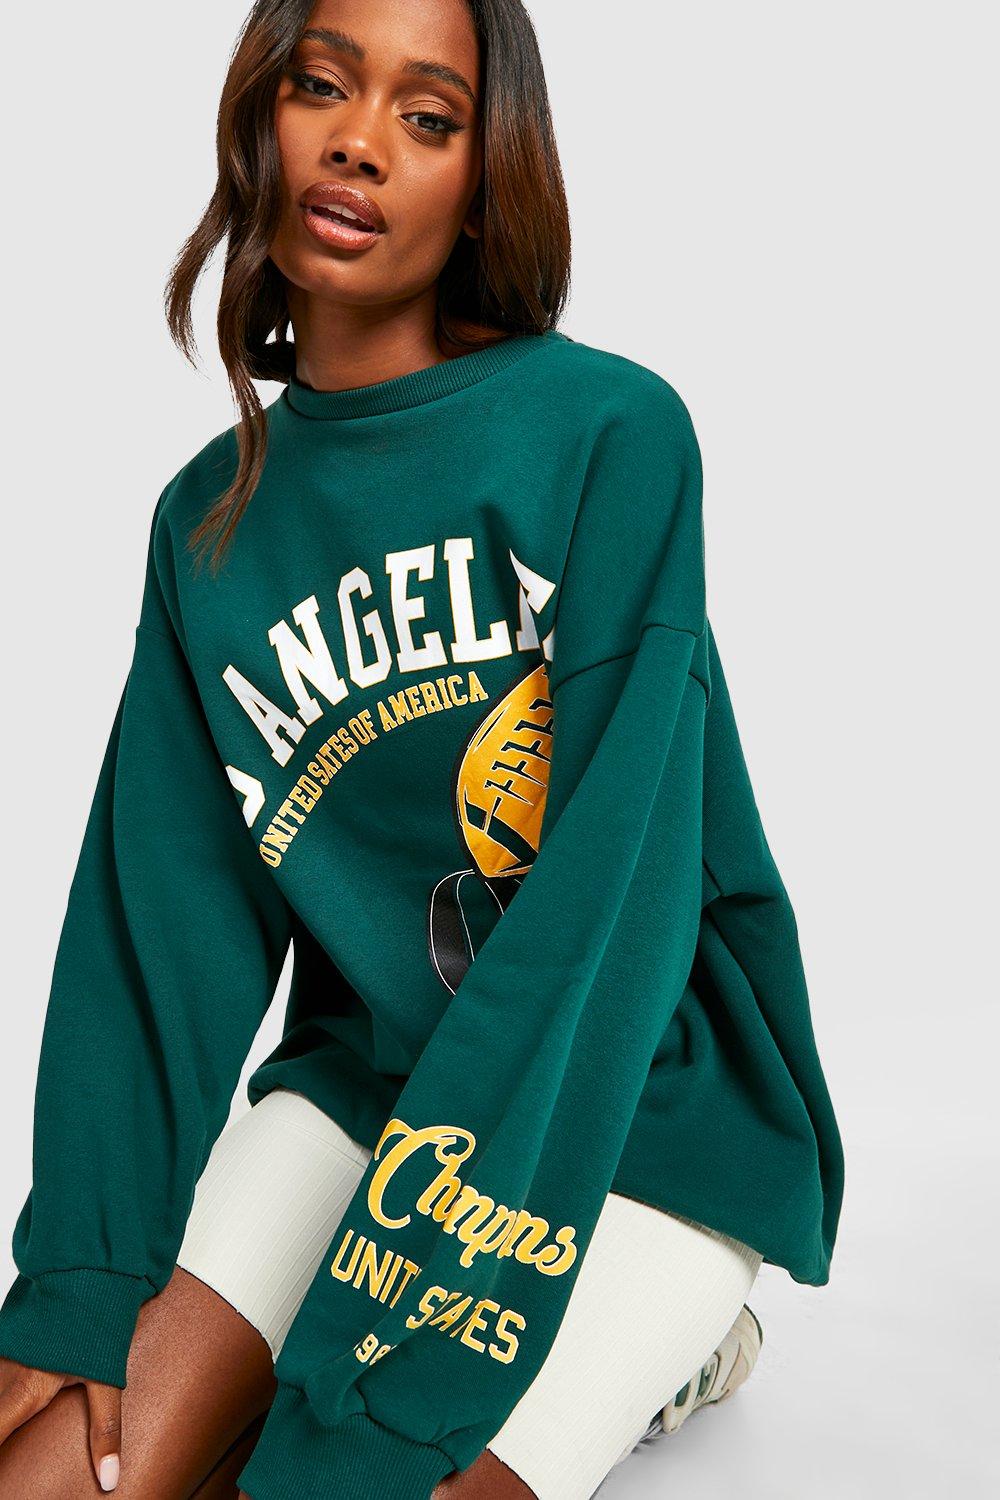 Alternatief voorstel Numeriek boot Women's Los Angeles Graphic Slogan Oversized Sweater | Boohoo UK